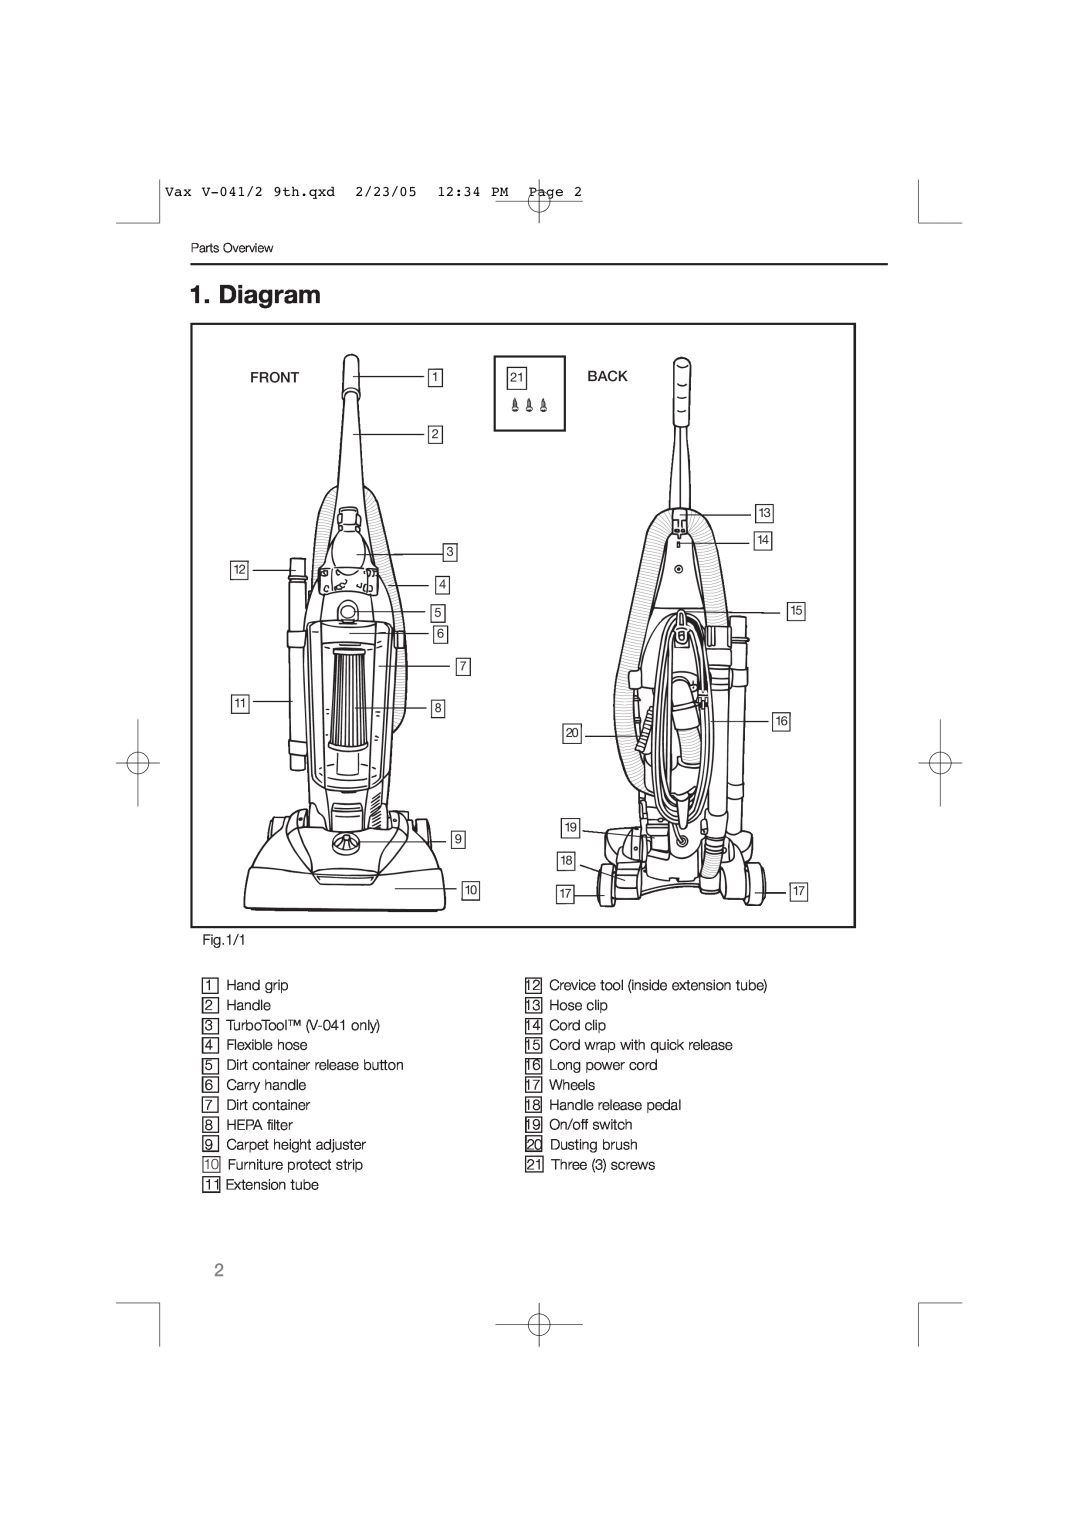 Vax V-042, V-041 instruction manual Diagram 